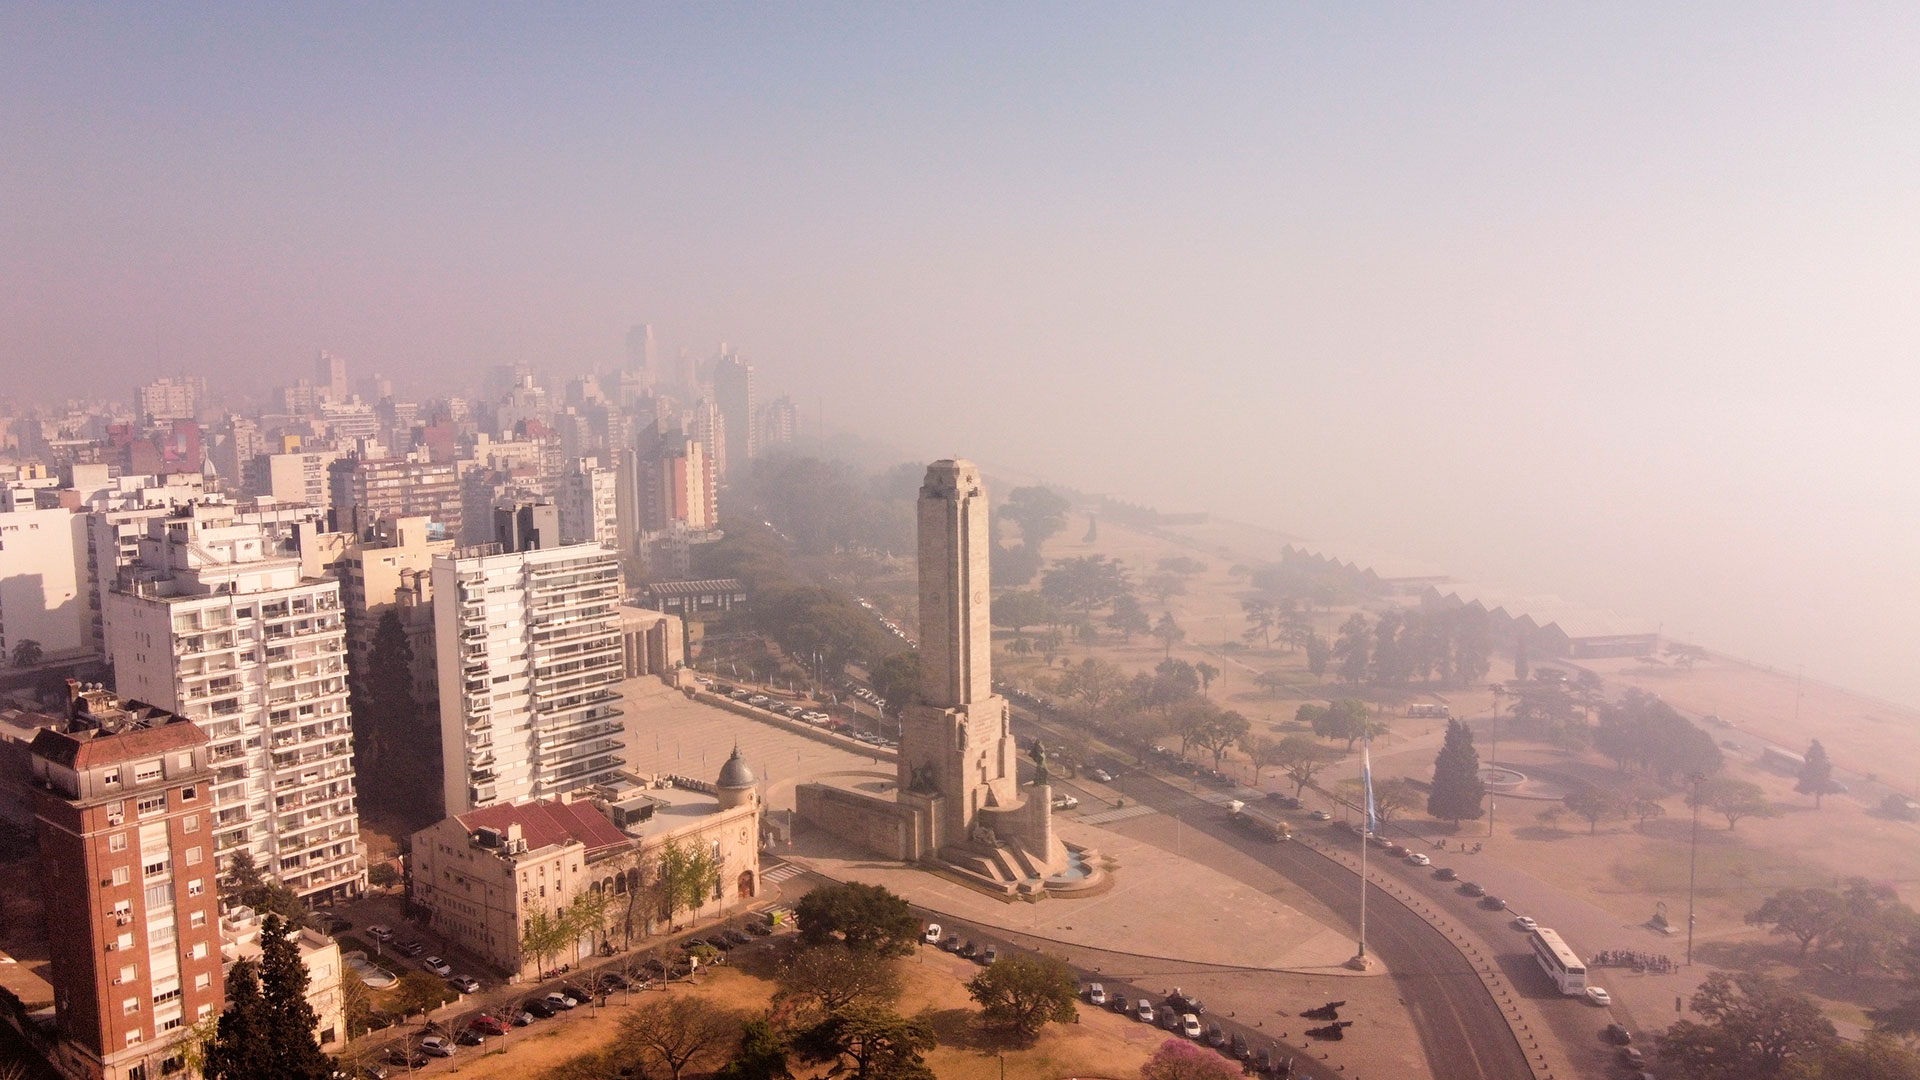 La ciudad de Rosario fue una de las más afectadas Rosario por el humo que se registró, en varias oportunidades, por incendios forestales que se sucedieron sobre el Delta / Archivo: TELAM